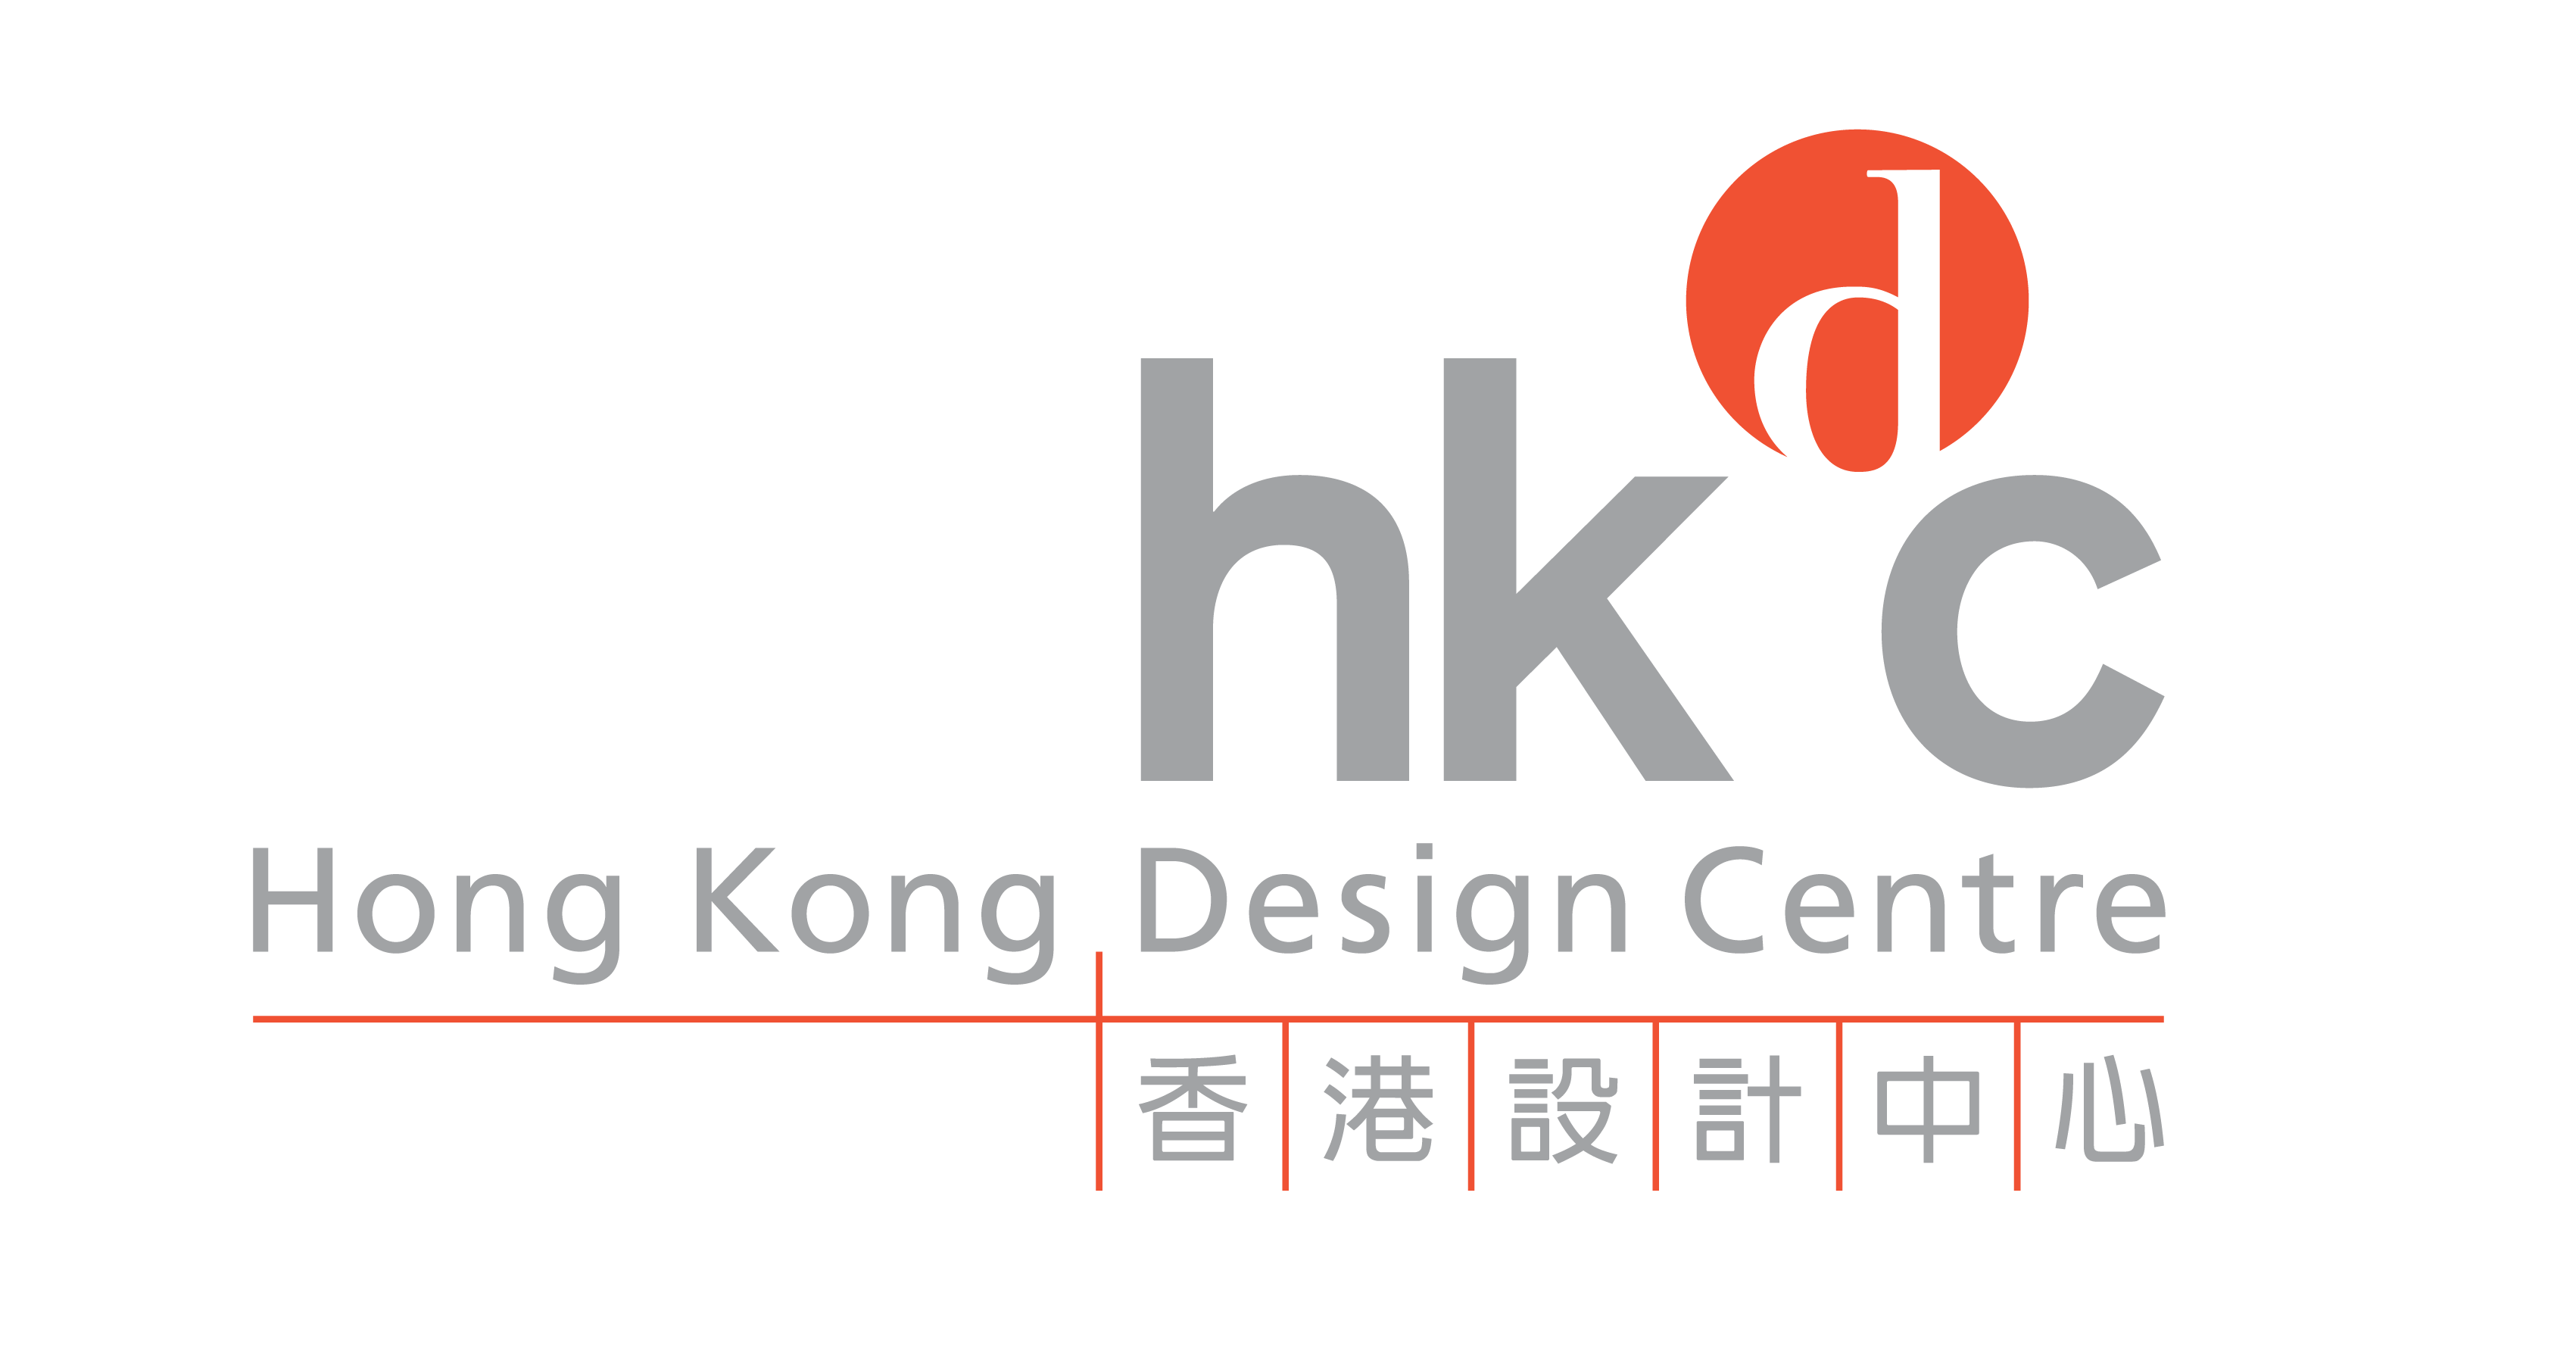 香港設計中心歡迎財政司司長 2024/25年財政預算案新措施  全方位打造香港品牌  發展高質量文化藝術及創意產業